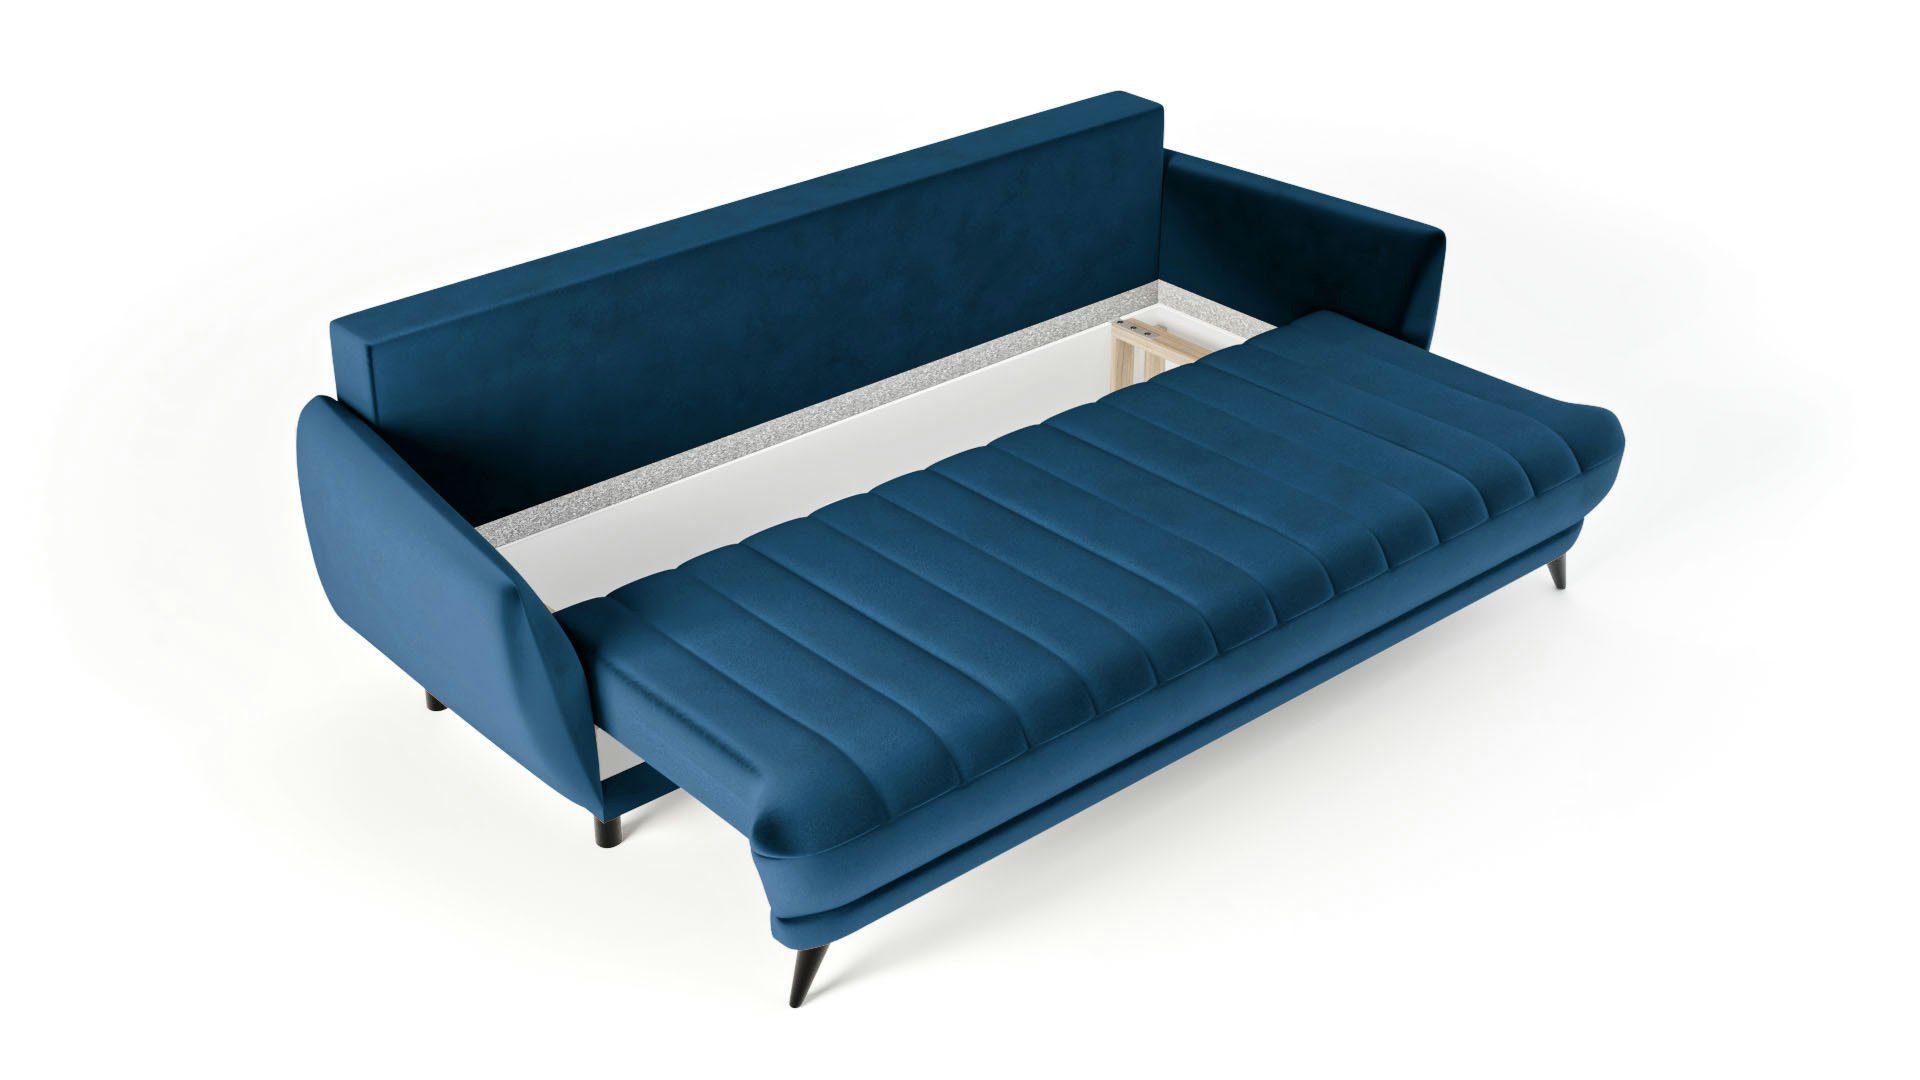 Wohnzimmer - Dreisitziges Sofa Elegantes 3-Sitzer Rolo 3-Sitzer Blau - Siblo Sofa bequemes modernes Sofa - 3